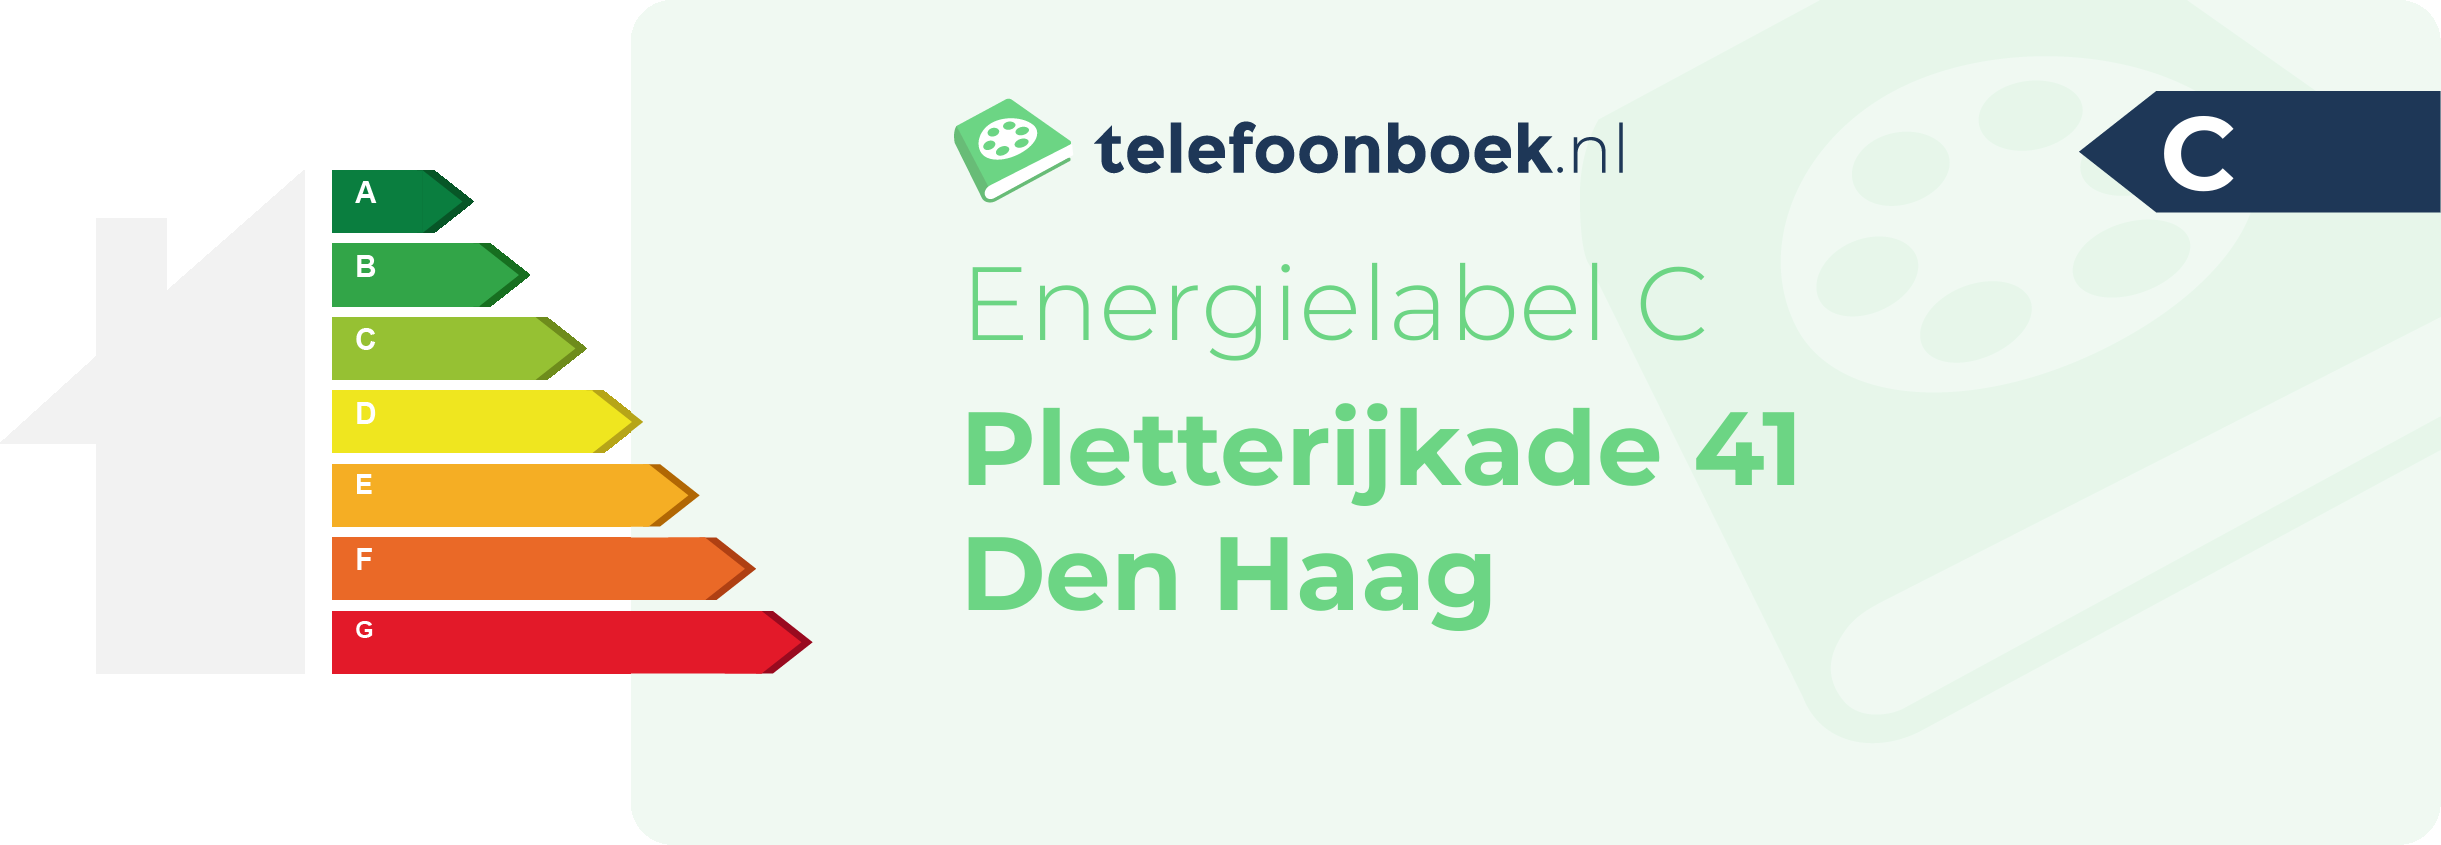 Energielabel Pletterijkade 41 Den Haag